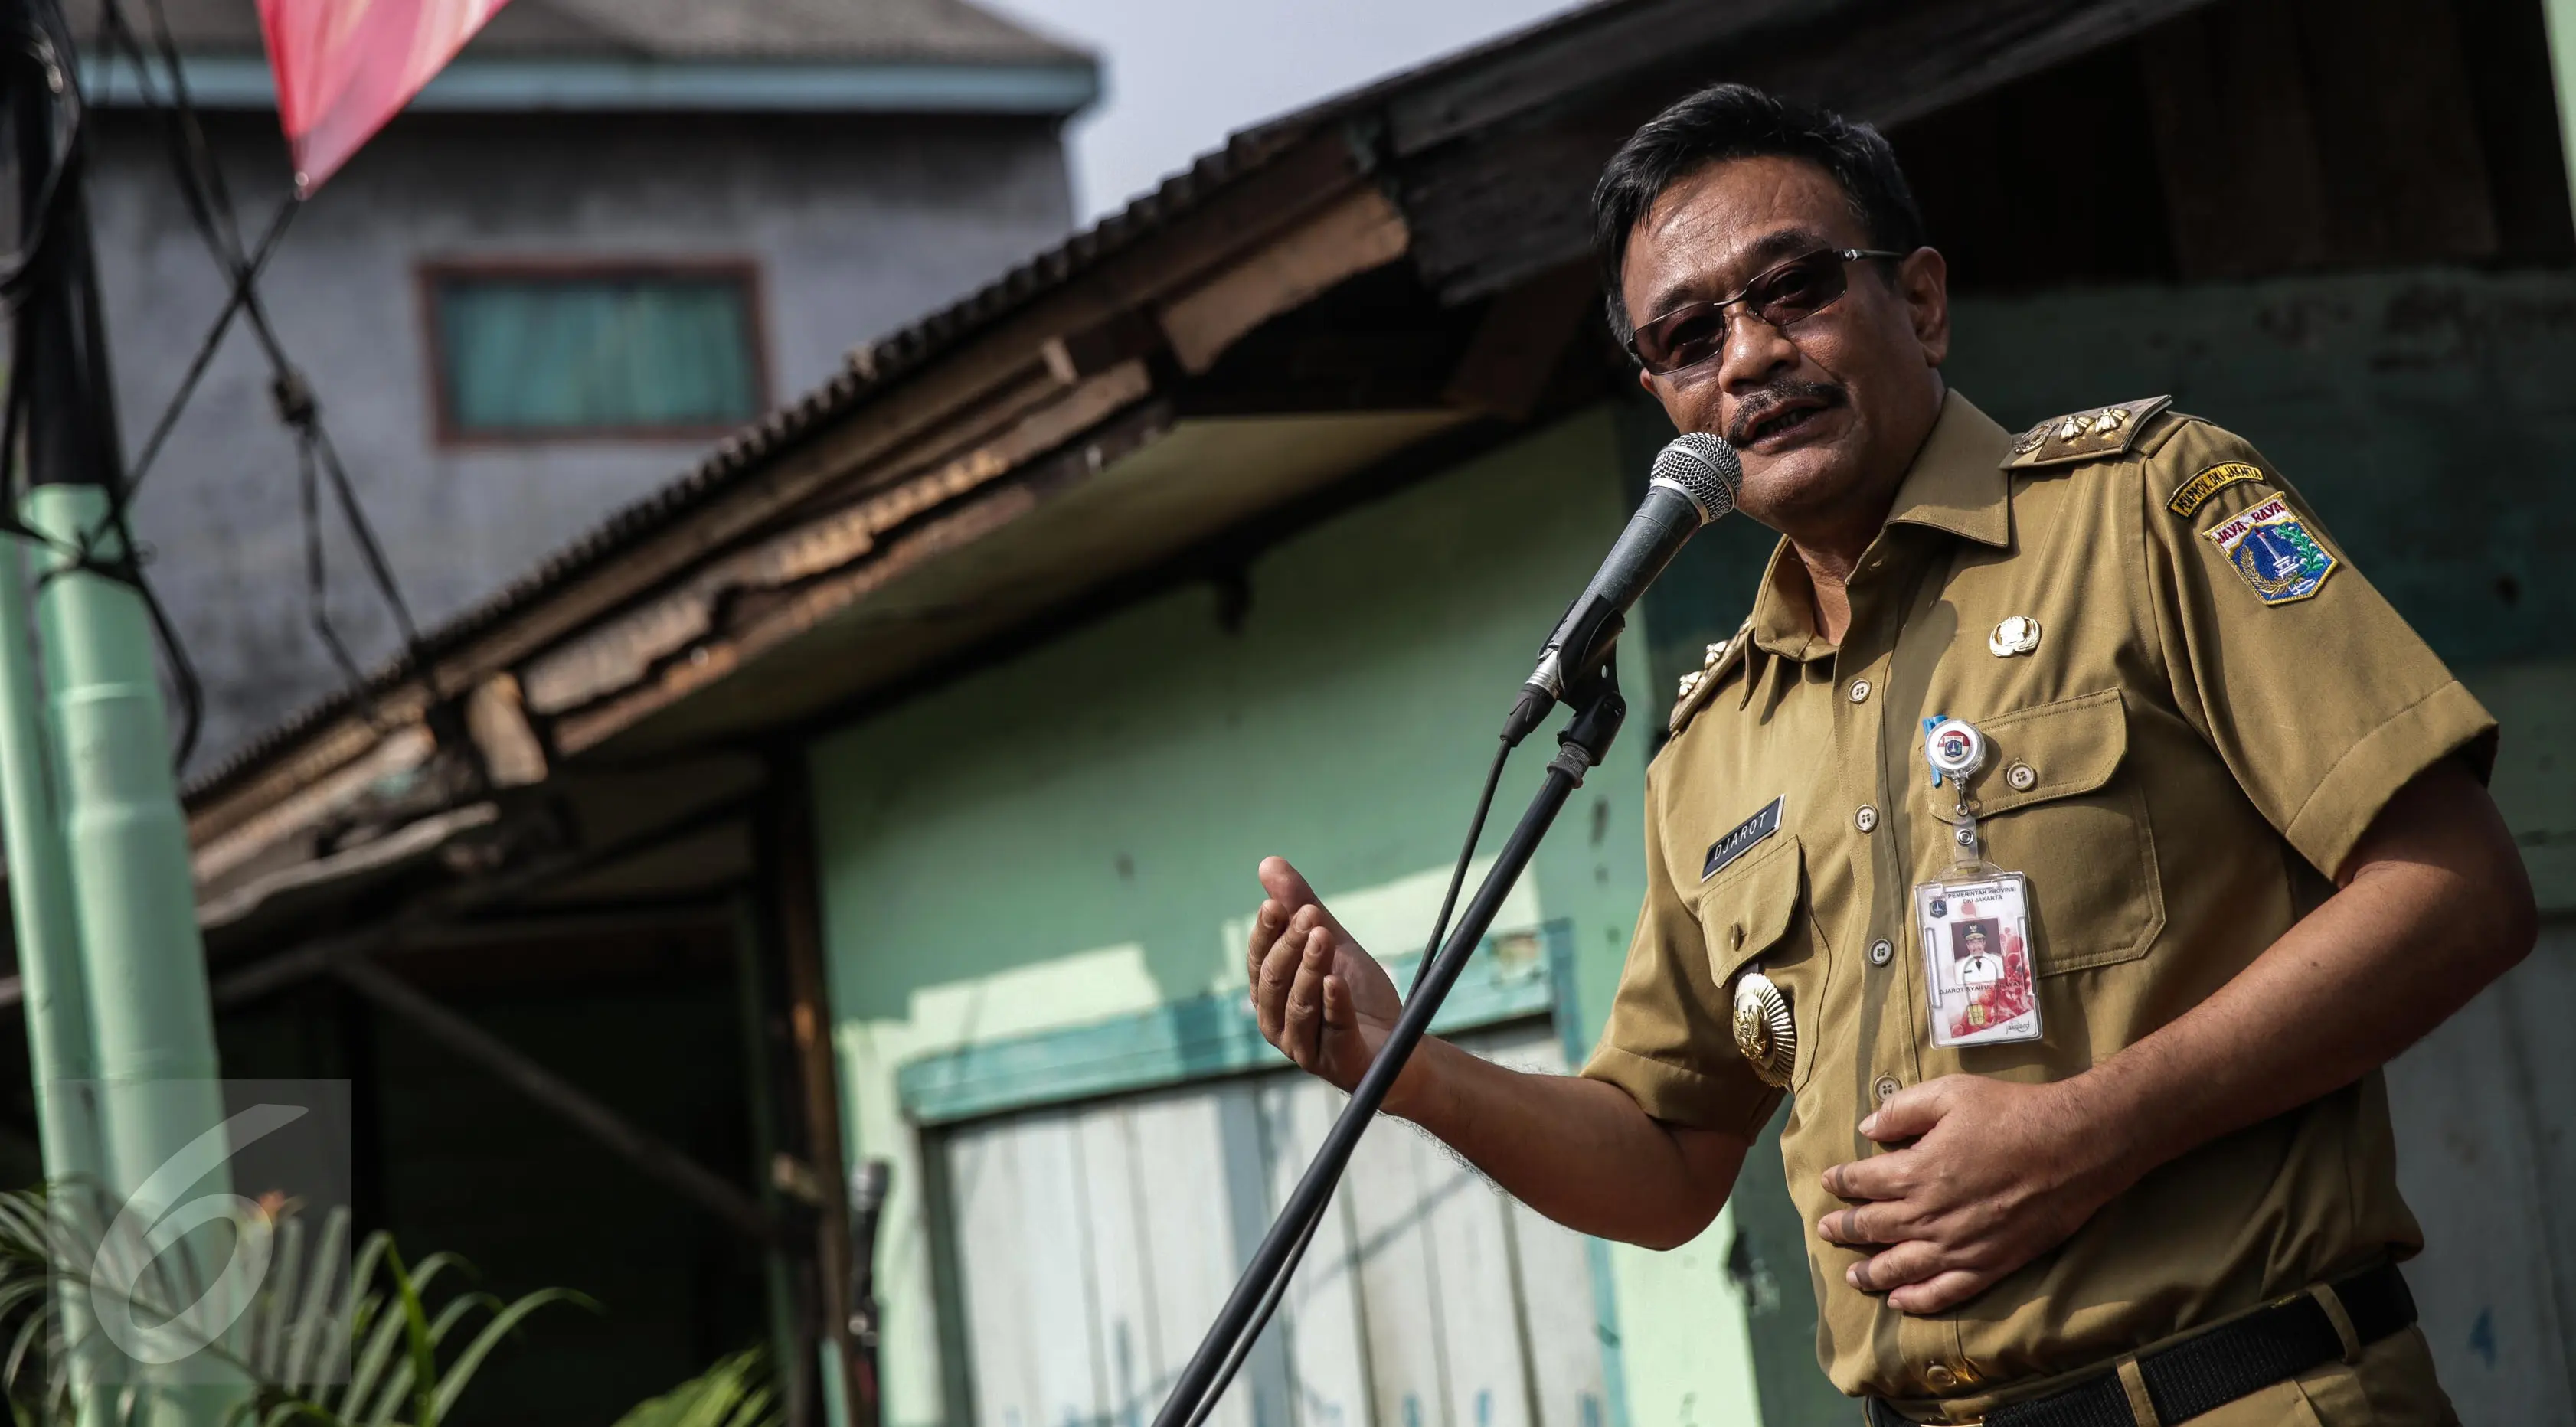 Wakil Gubernur DKI Jakarta, Djarot Saiful memberi sambutan saat meresmikan program bedah rumah di Cilincing, Jakarta, Senin (17/4). Pada tahap pertama, sebanyak 18 dari 83 rumah akan dibedah terlebih dahulu. (Liputan6.com/Faizal Fanani)